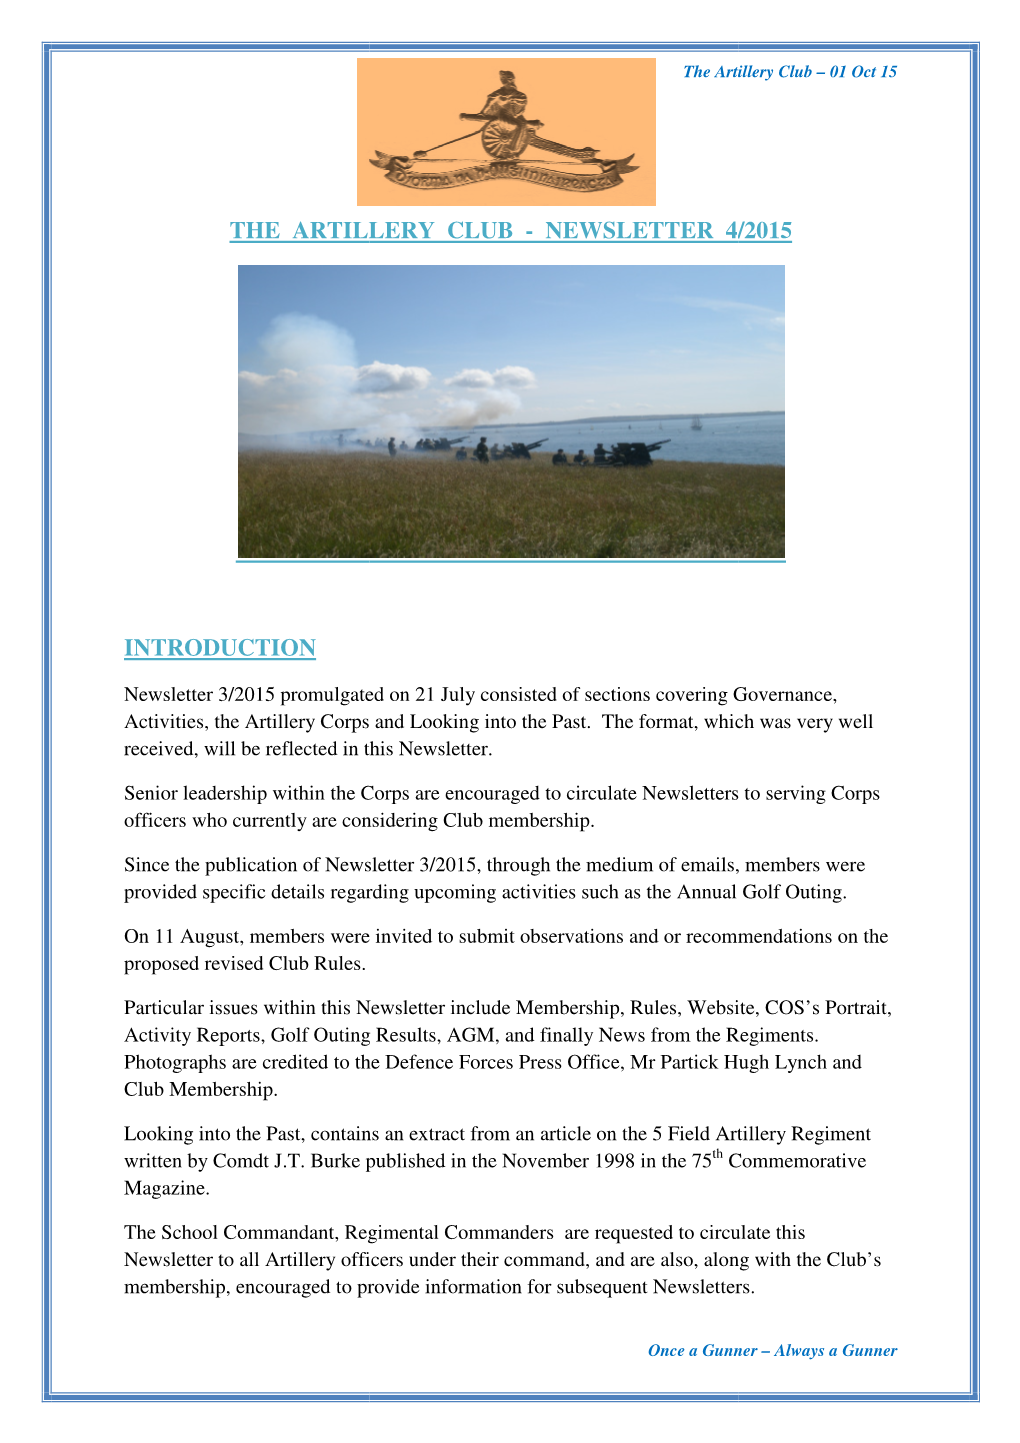 Artillery Club Newsletter 4 of 2015